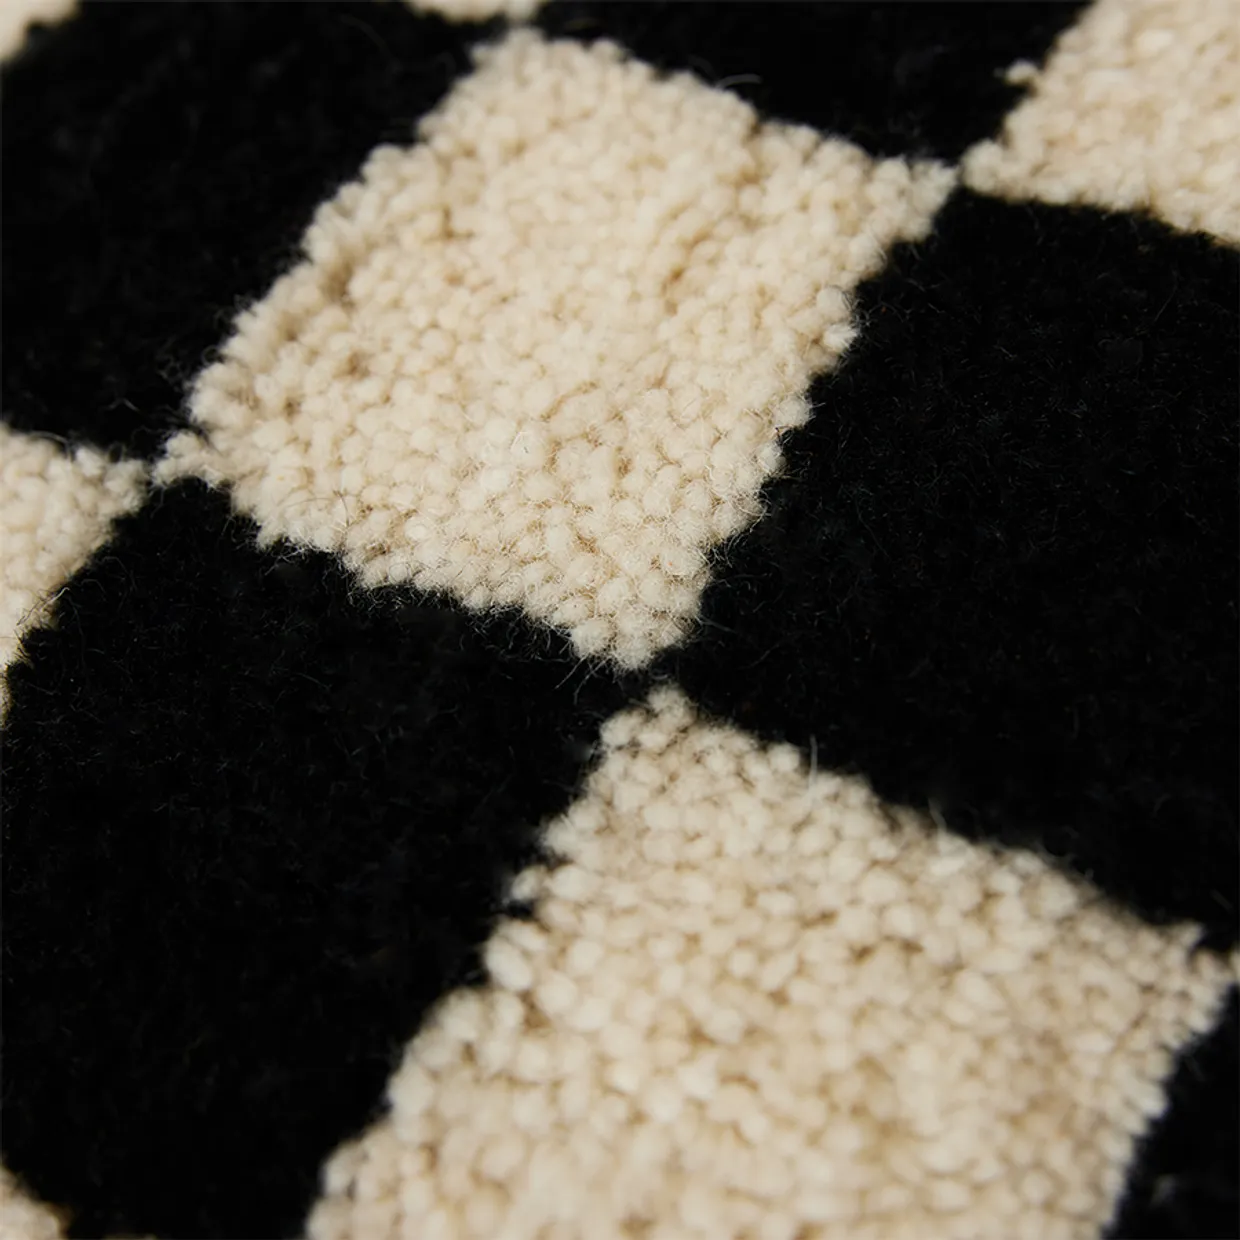 Woolen cushion black and white statement (50x50cm)